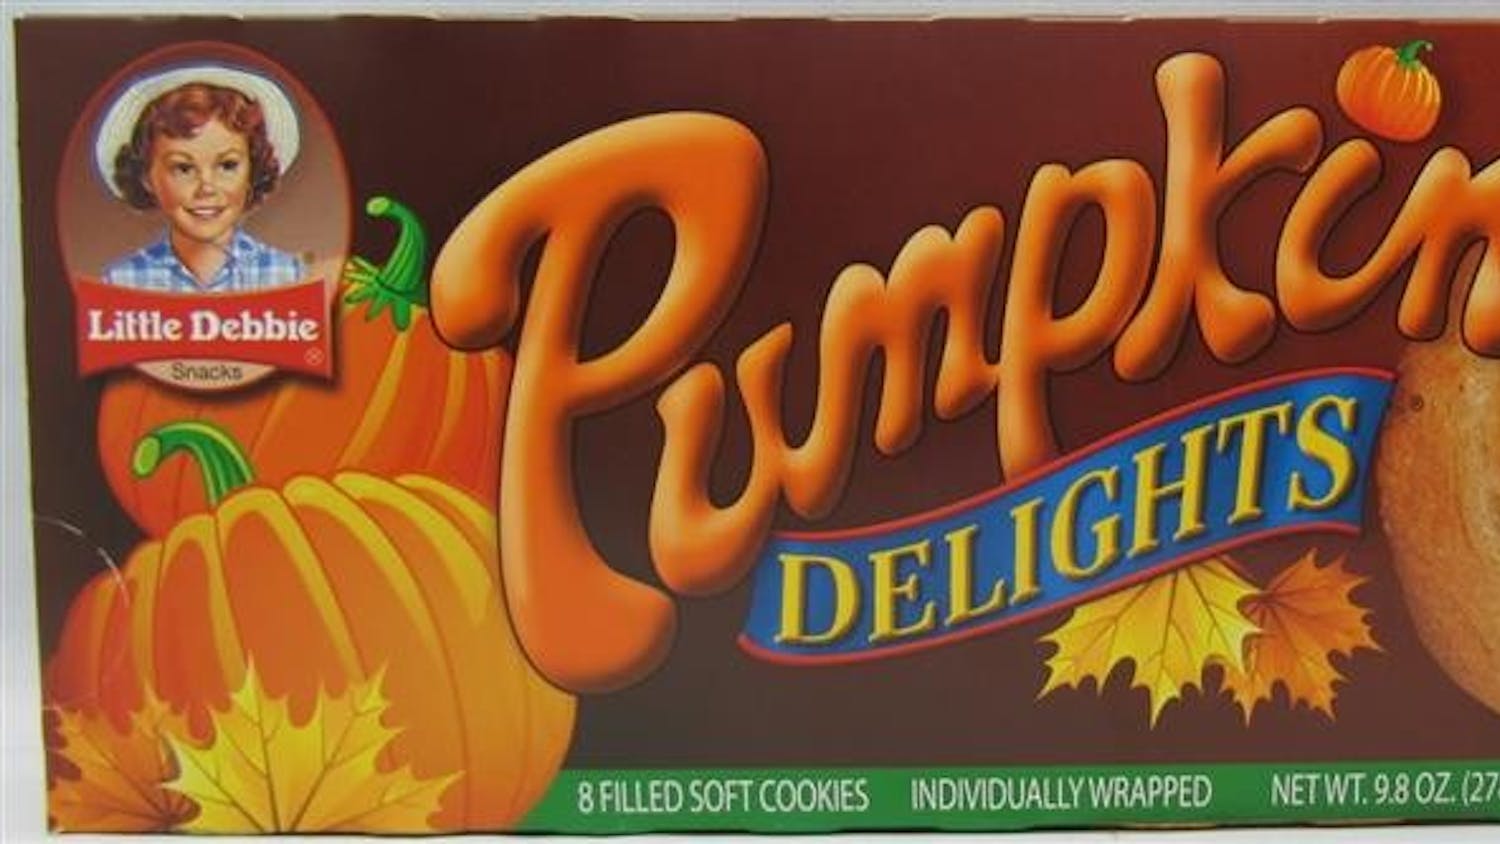 Pumpkin Delights